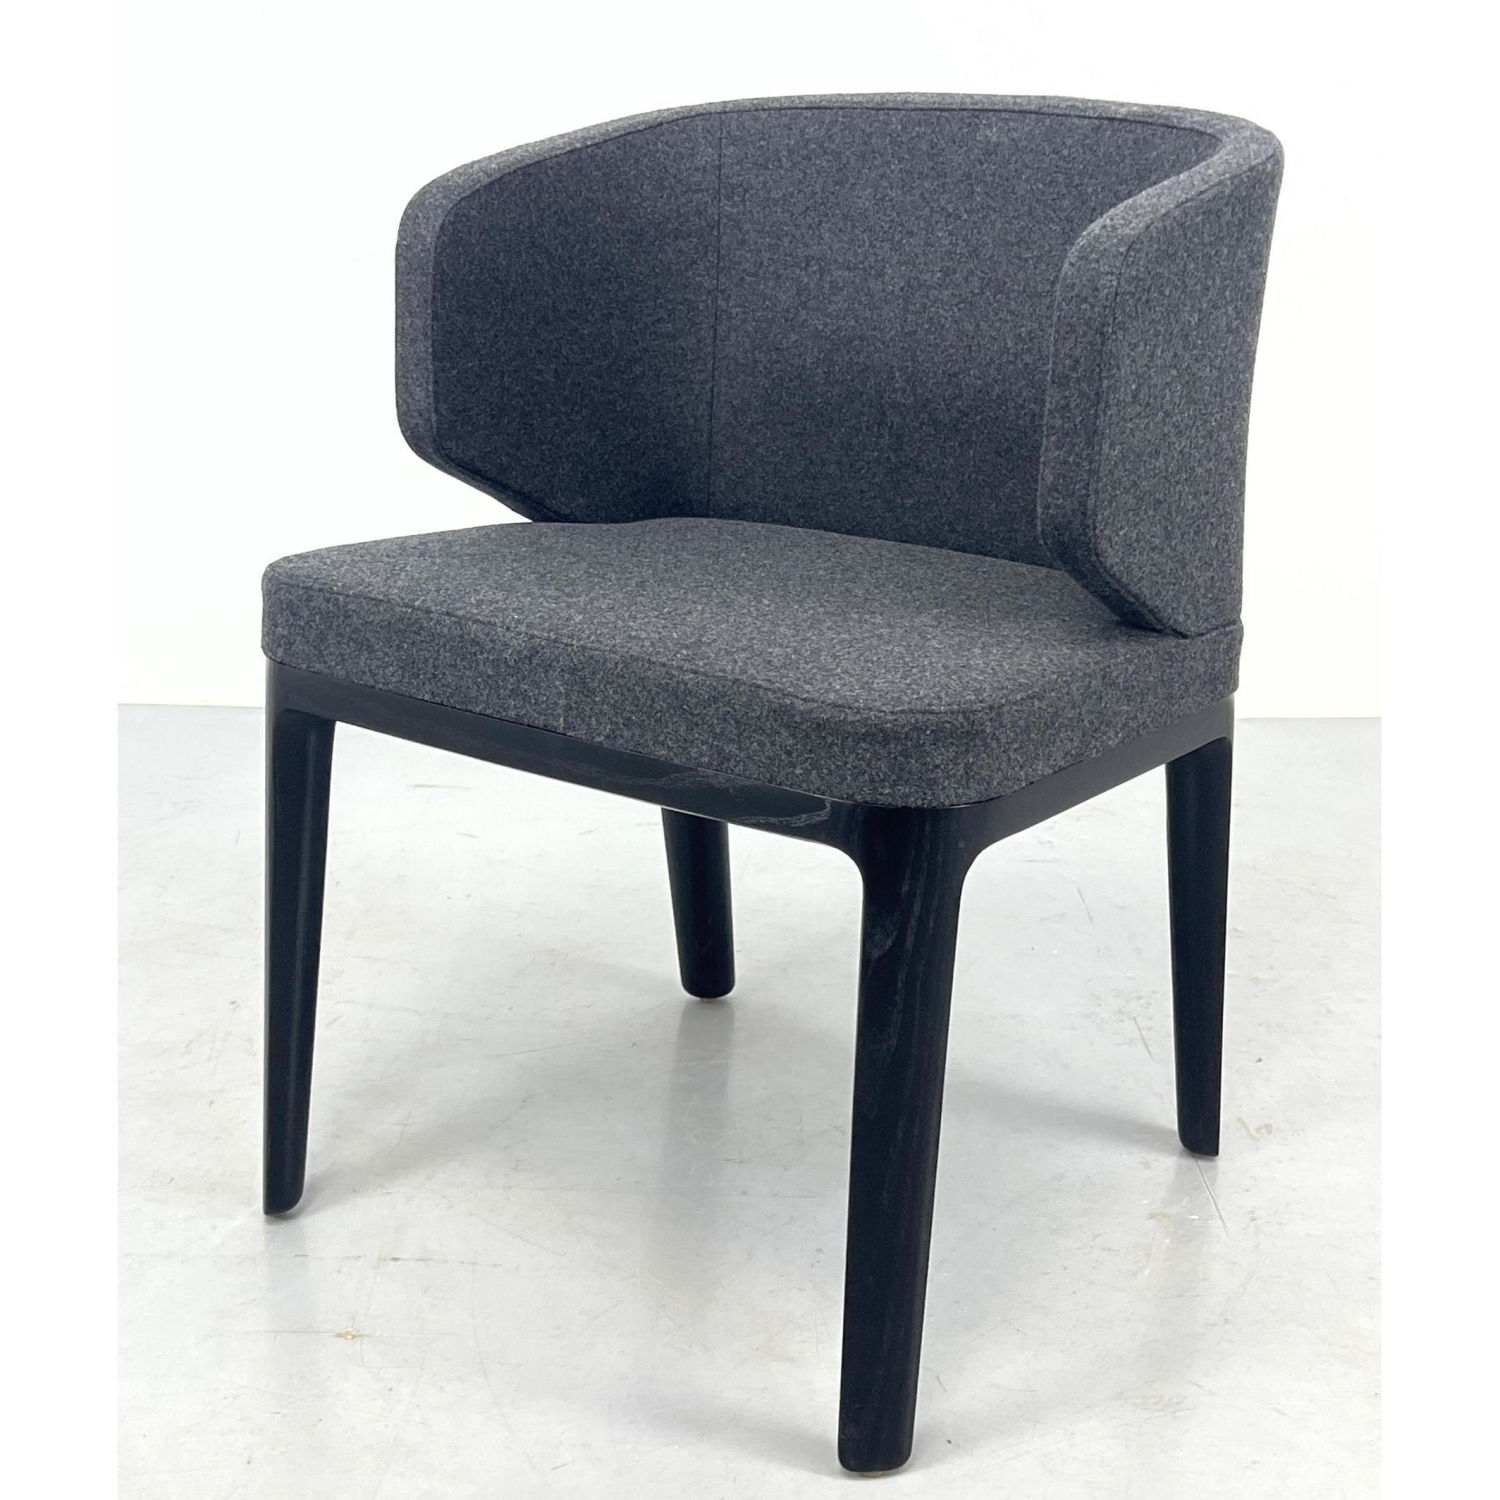 Geiger International Side Chair 2fd013